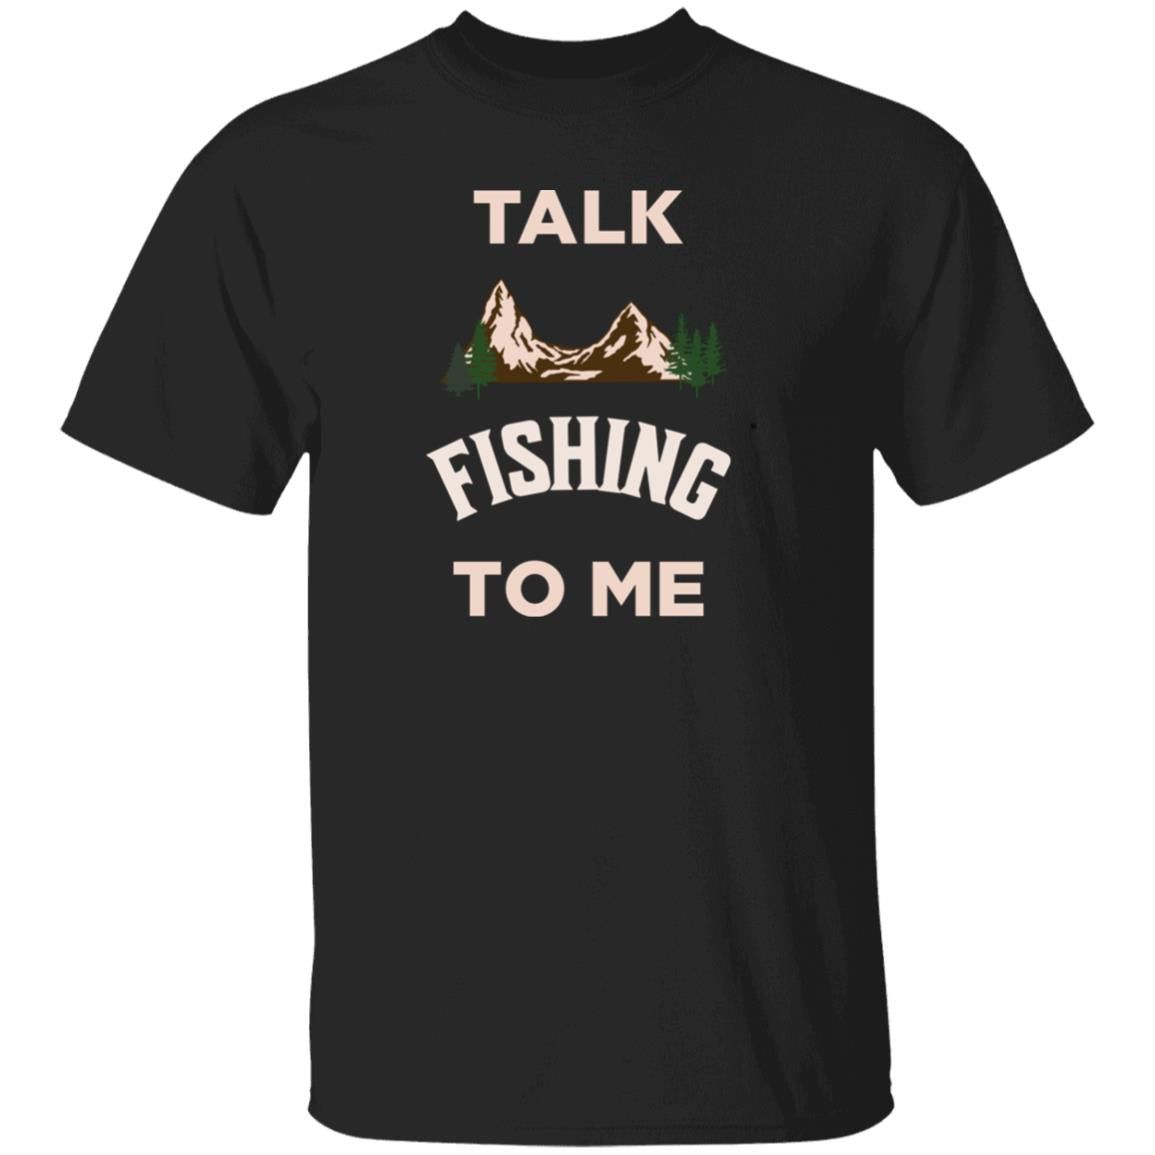 Talk fishing to me k t-shirt black